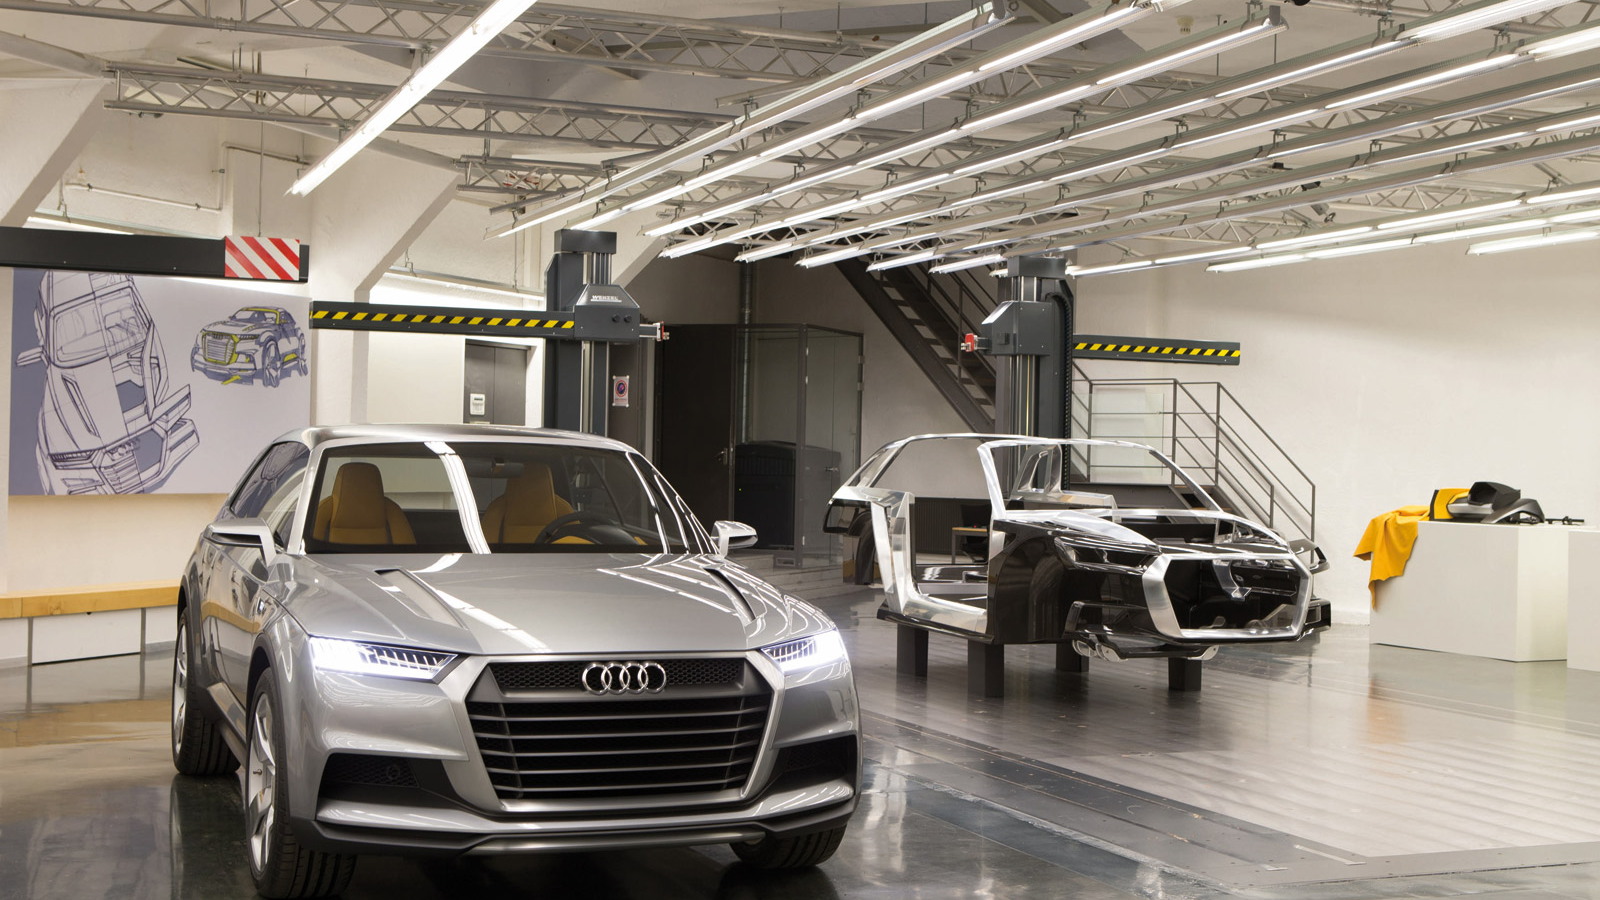 Audi Concept Design Studio in Munich, Germany